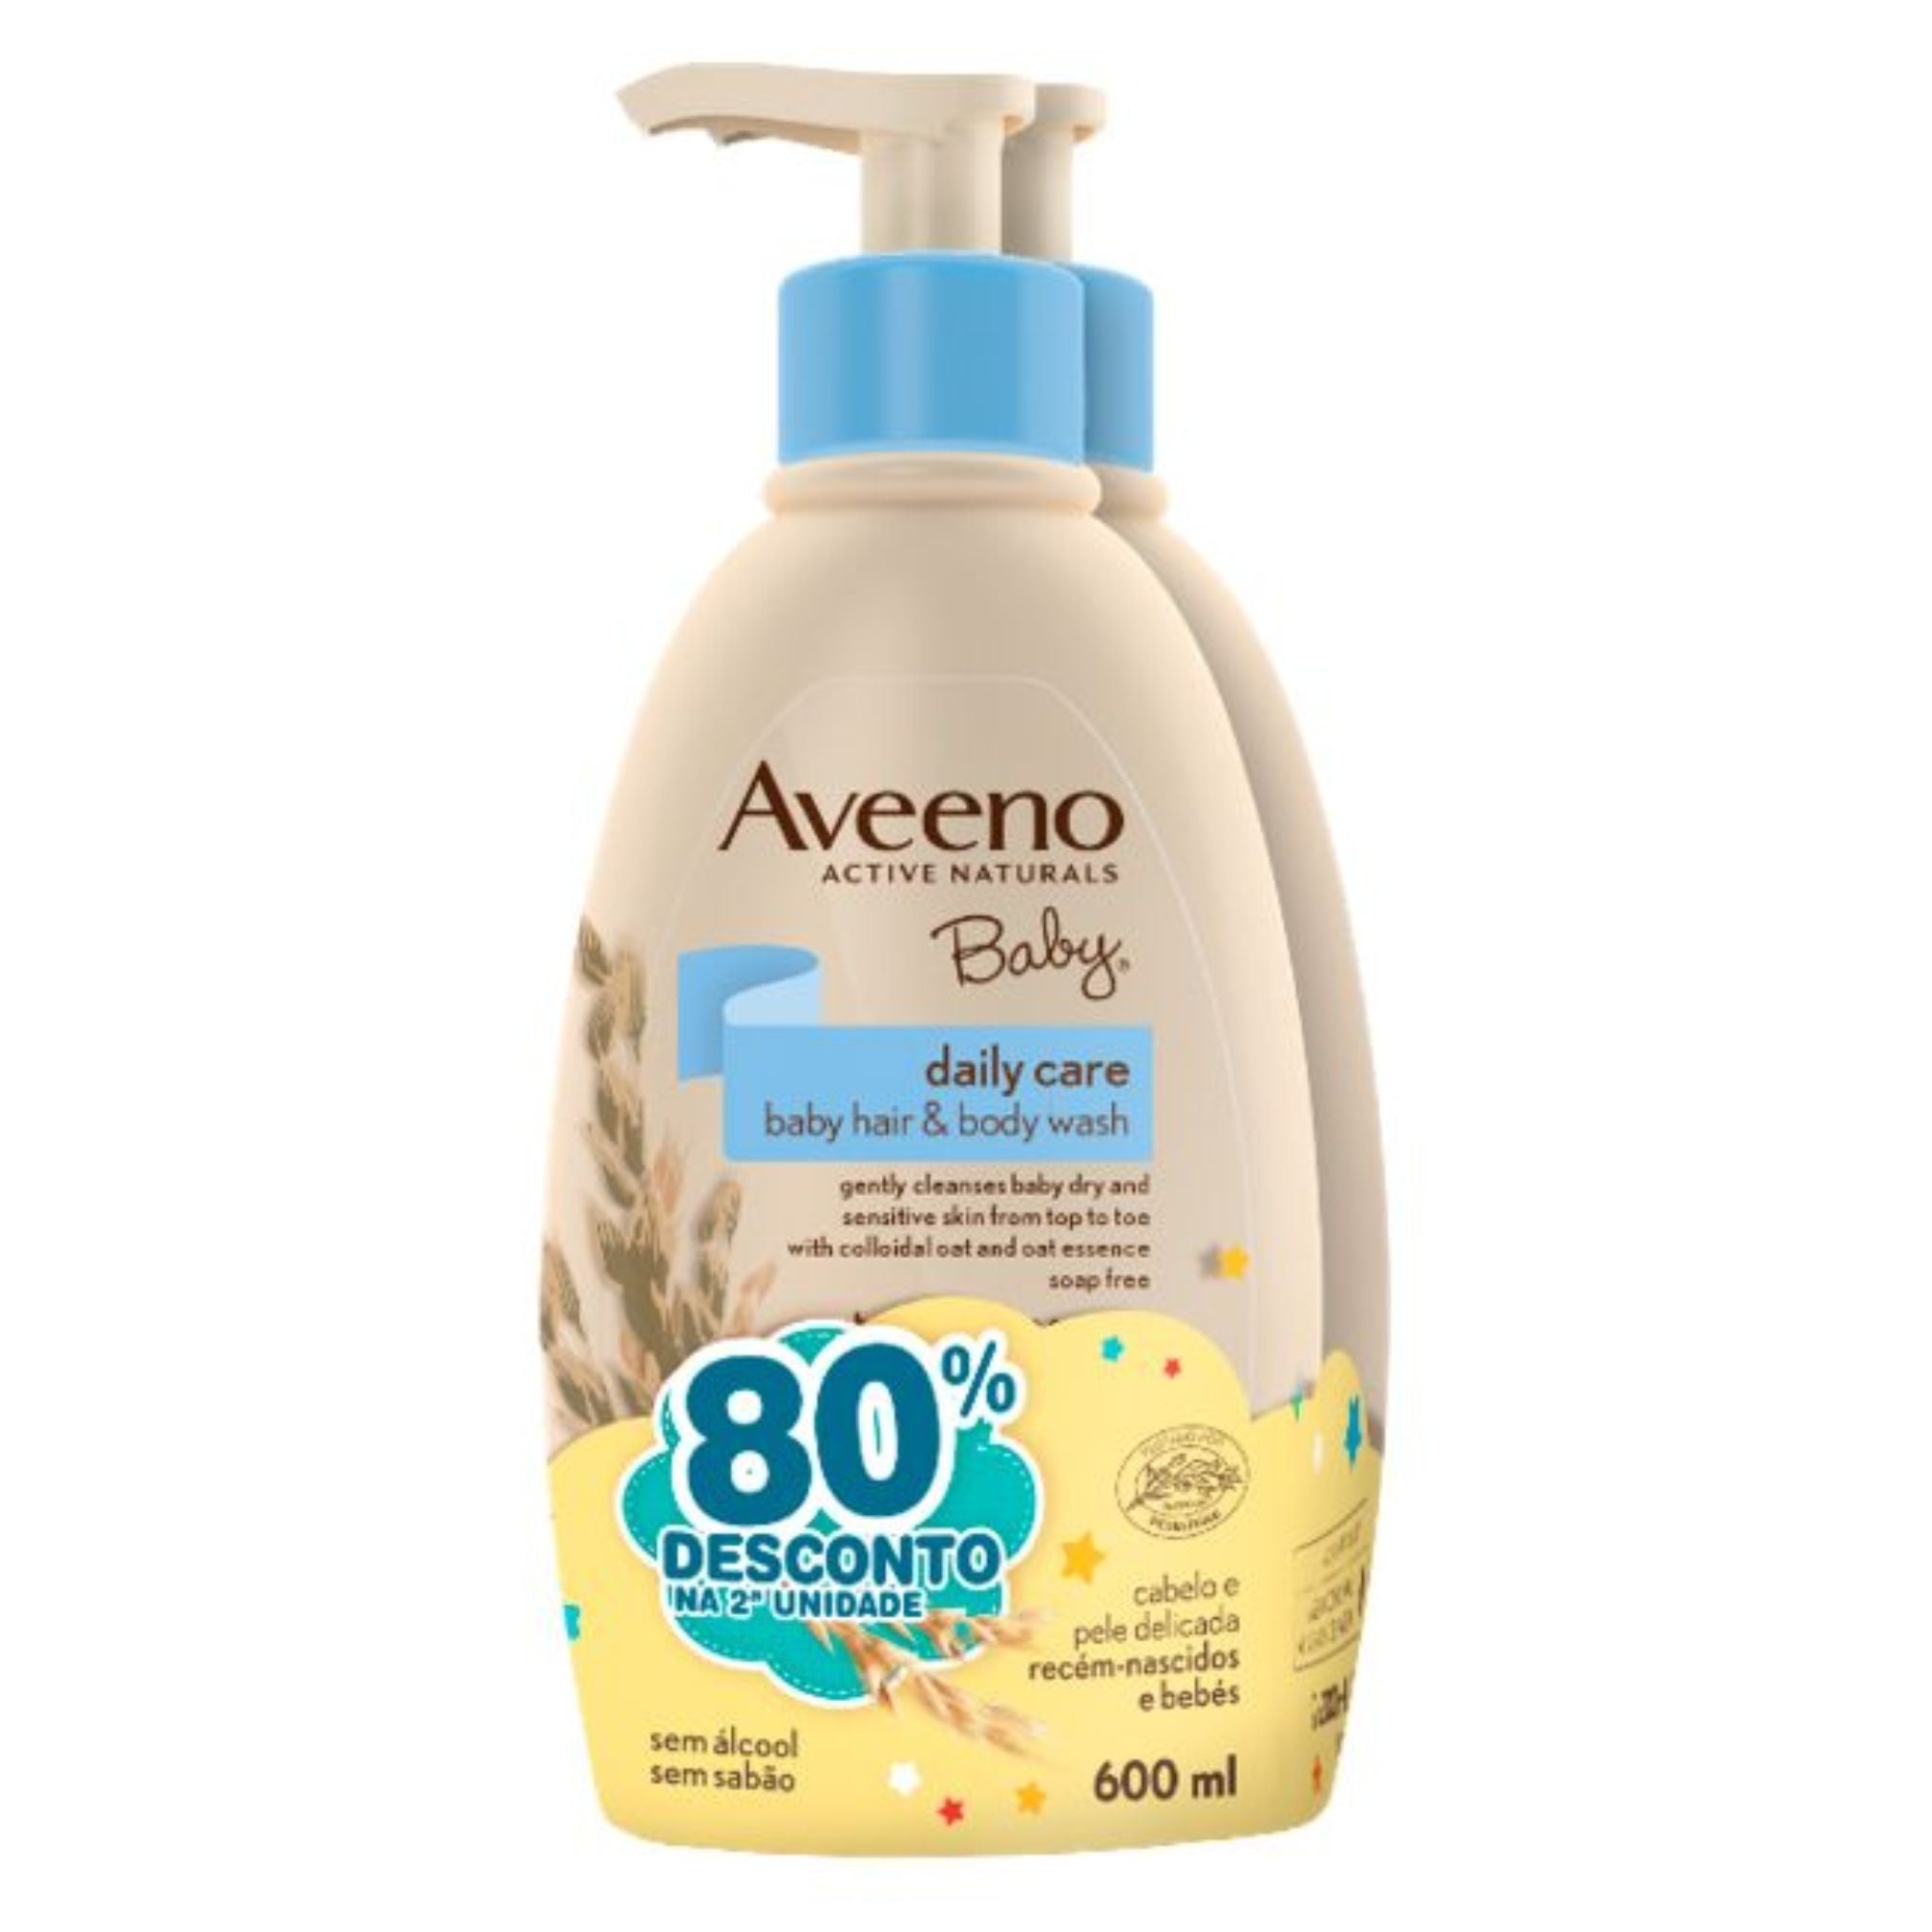 Aveeno Promo Pack: Aveeno Baby Daily Care Baby Hair & Body Wash 2x300ml